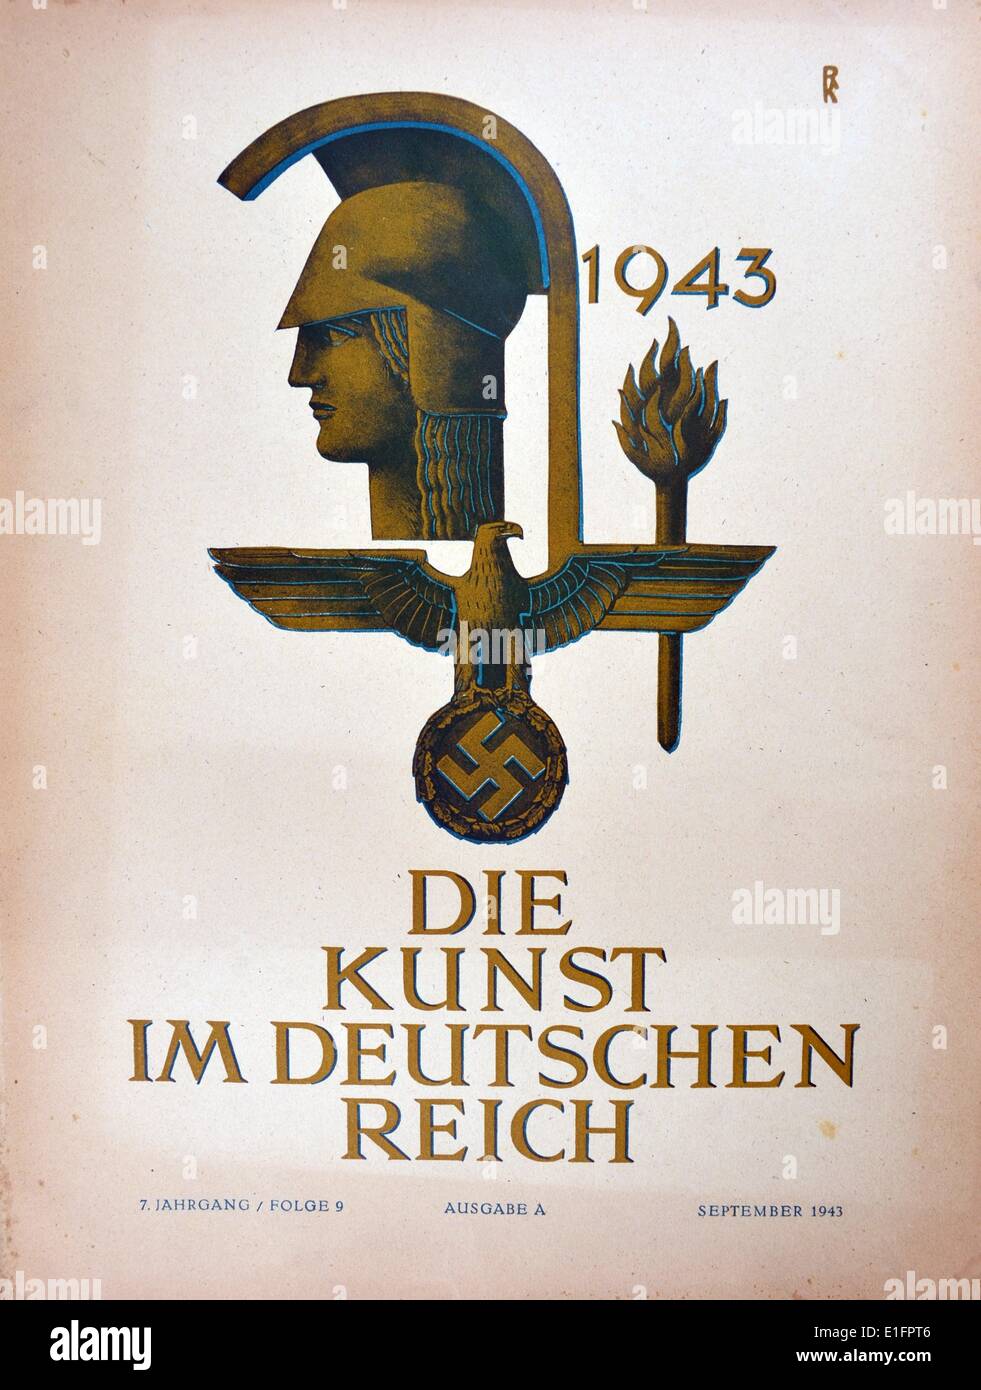 1943 Couverture de 'Die Kunst im deutschen Reich" (l'art dans l'Empire allemand) a d'abord publié en janvier 1937 par Gauleiter Adolf Wagnerand plus tard publié sous la direction d'Adolf Hitler lui-même. Banque D'Images